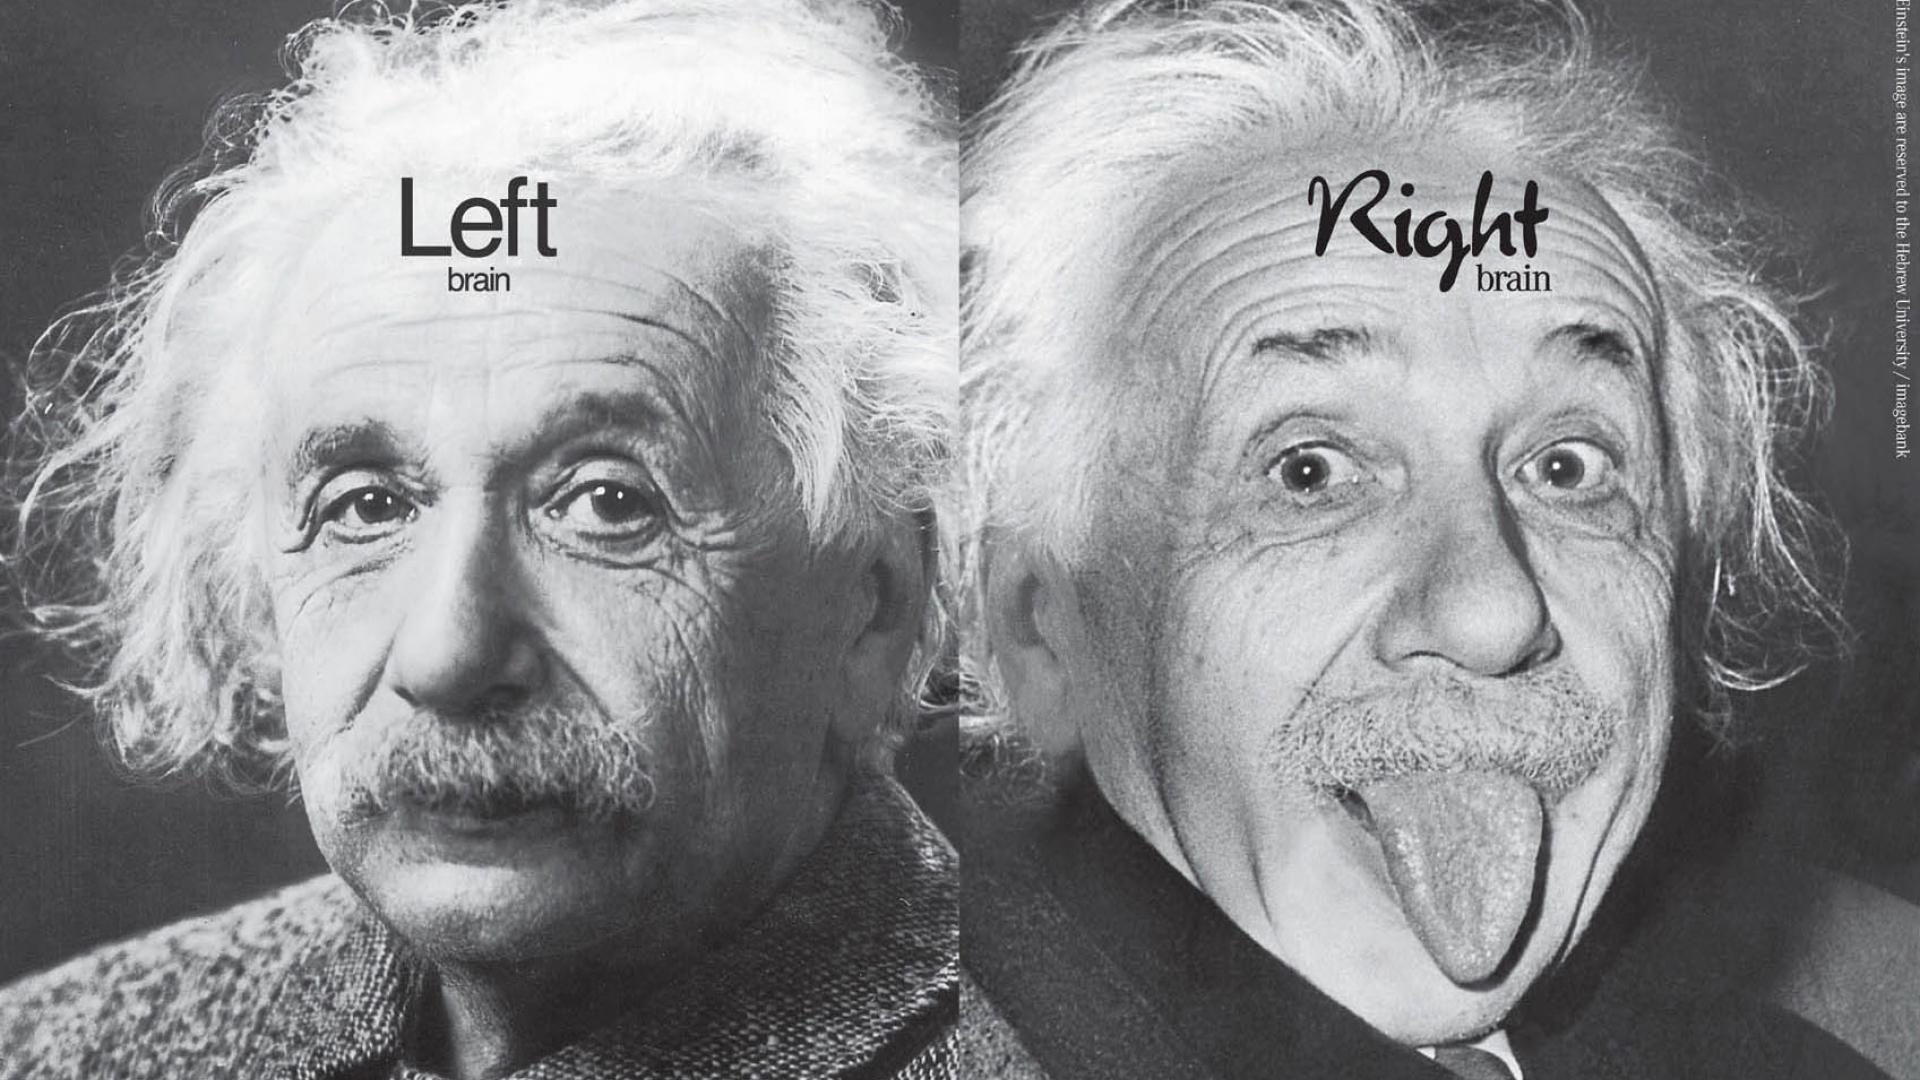 عجیب ترین عکس از اسطوره قرن بیستم آلبرت انیشتین برای آیفون